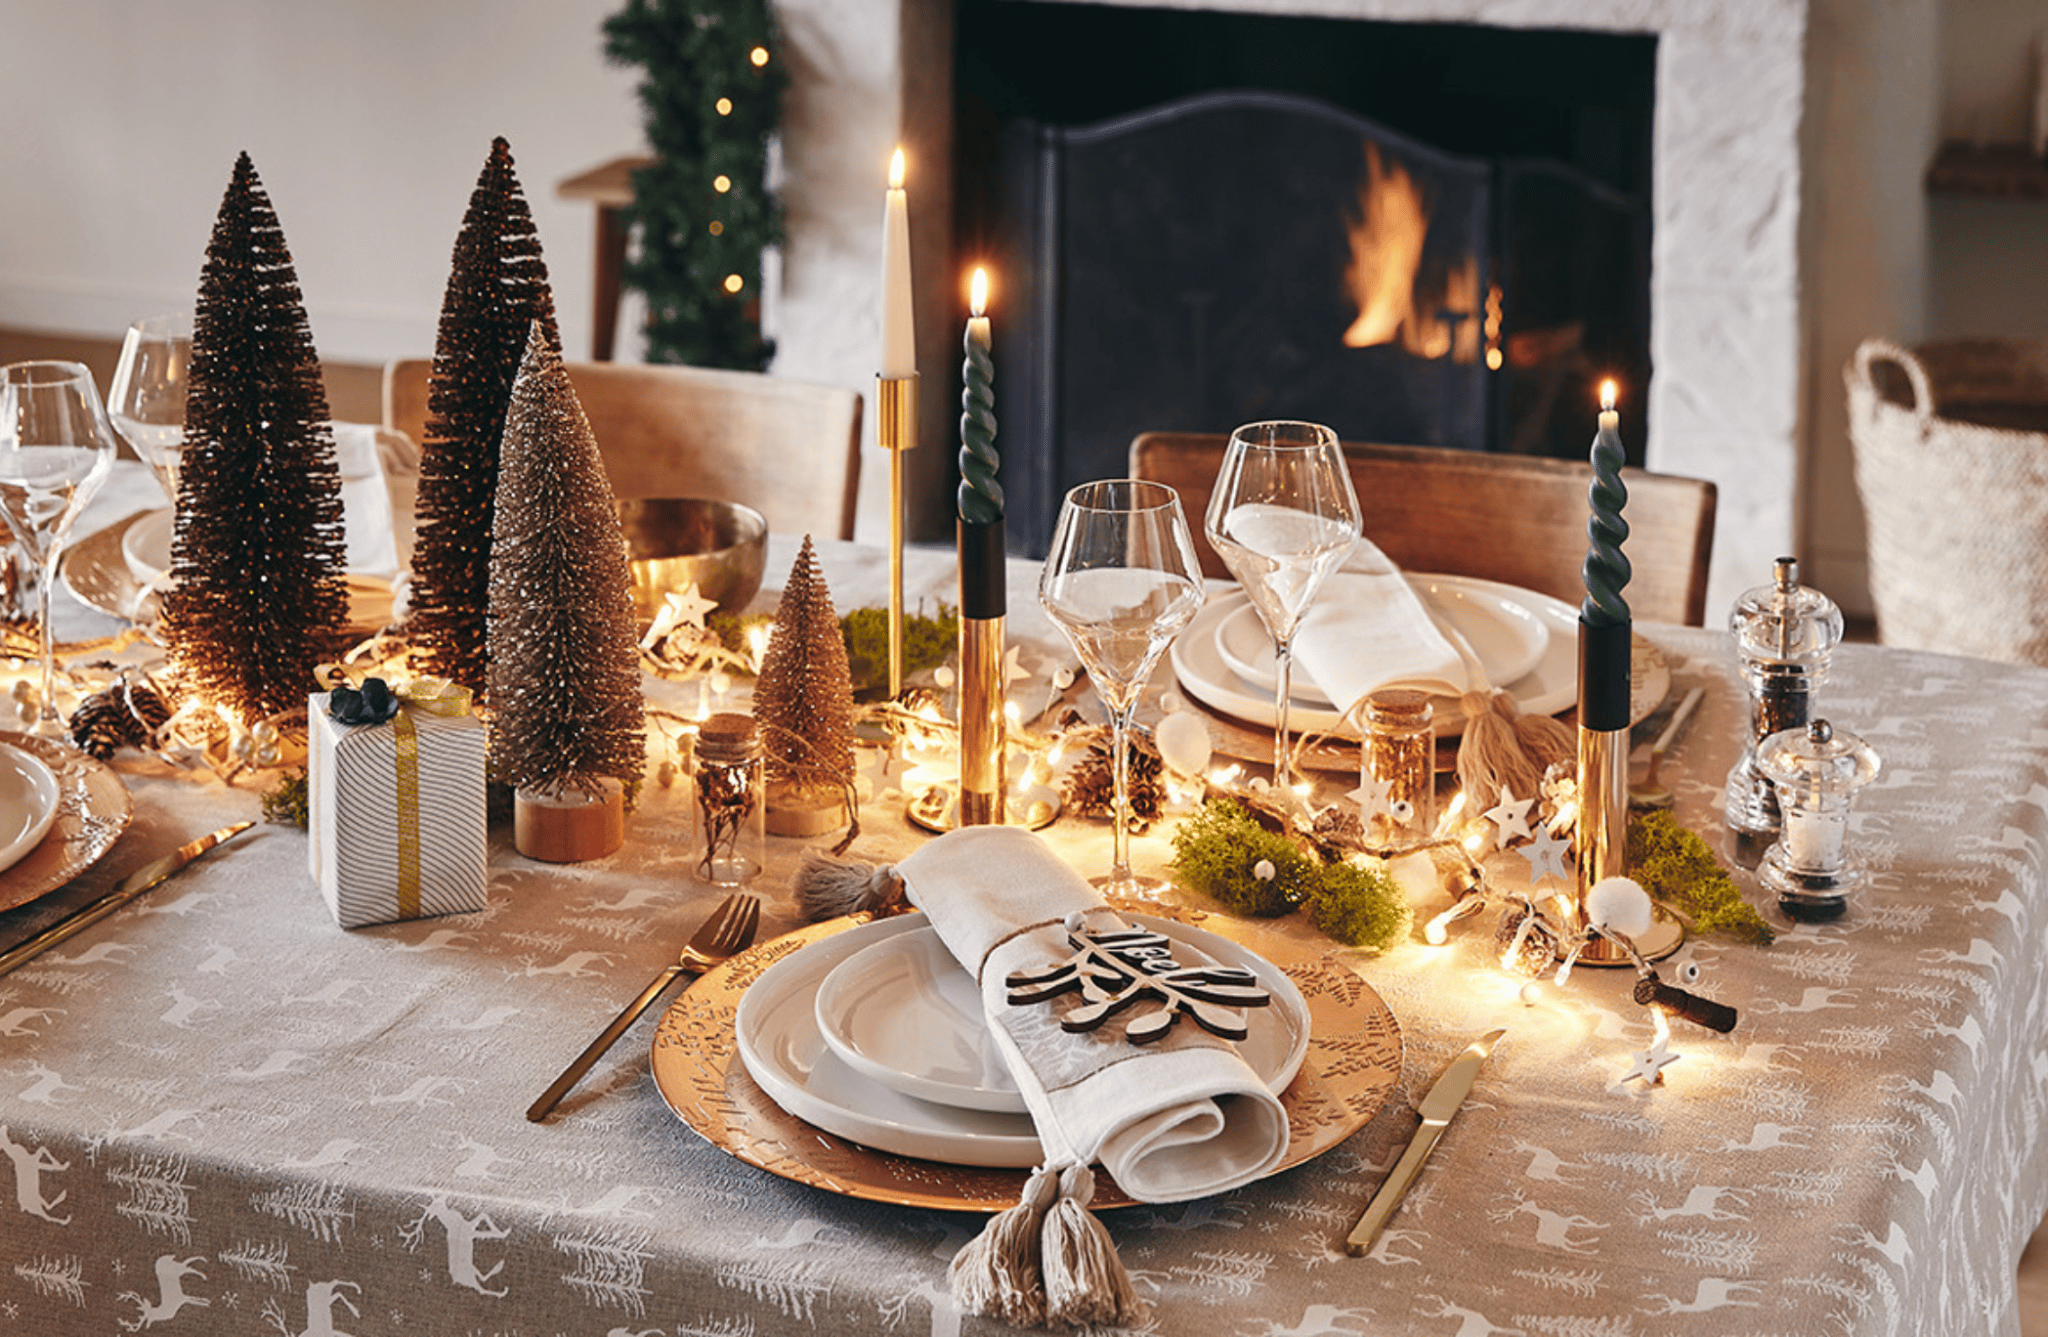 Comment faire un repas de Noël traditionnel ? - Cuisine Actuelle